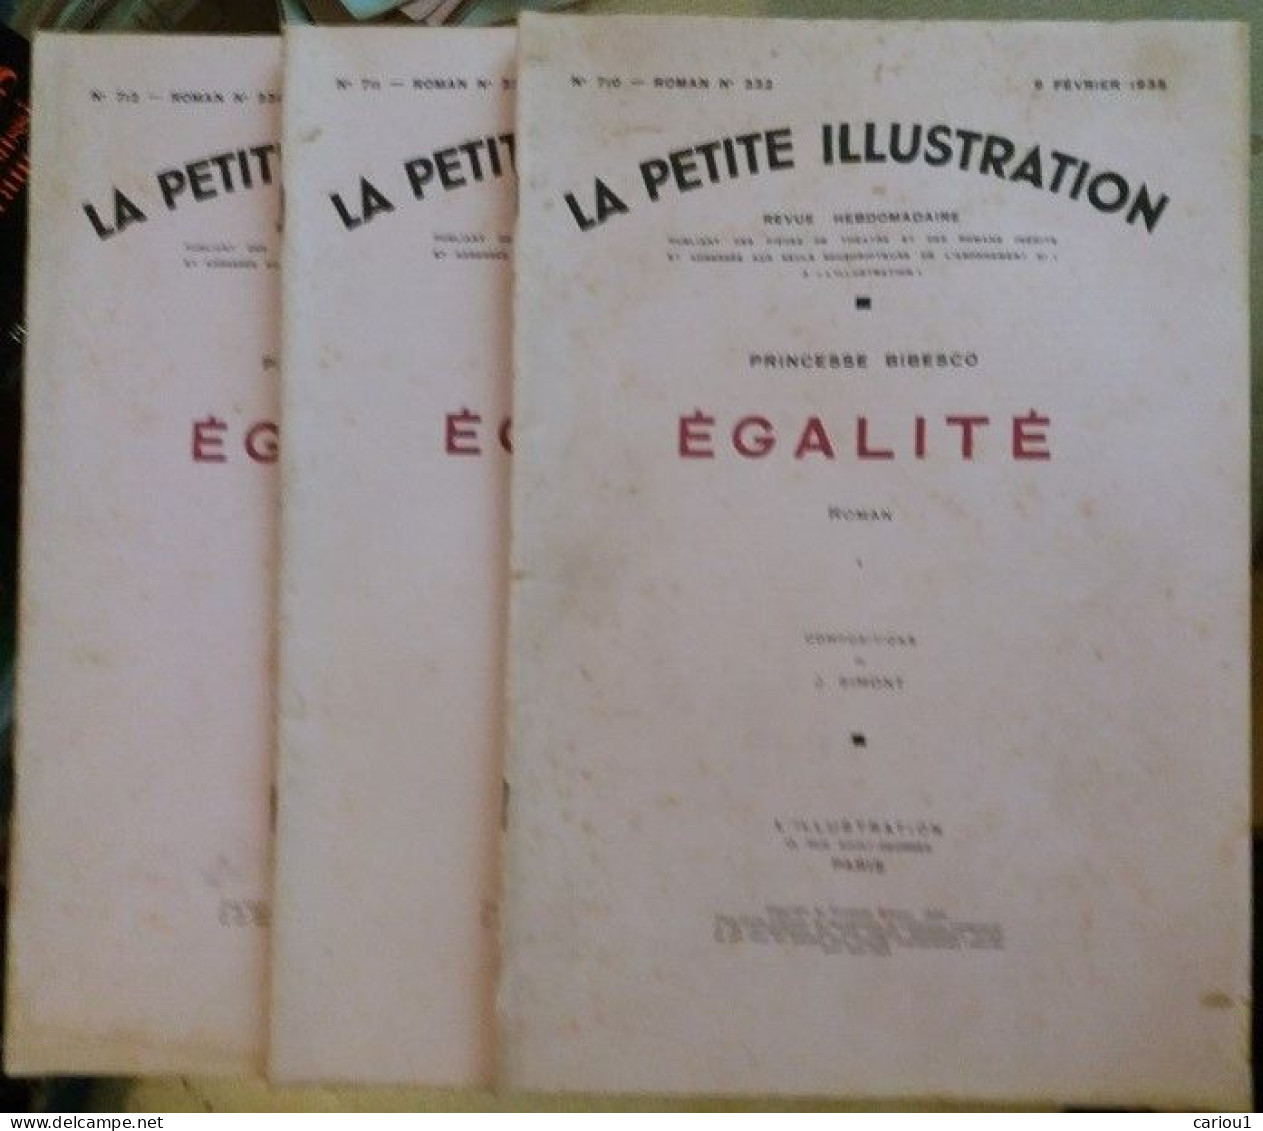 C1 PRINCESSE BIBESCO - EGALITE Petite Illustration 1935 Complet JOUVENEL Simont PORT INCLUS France - 1901-1940